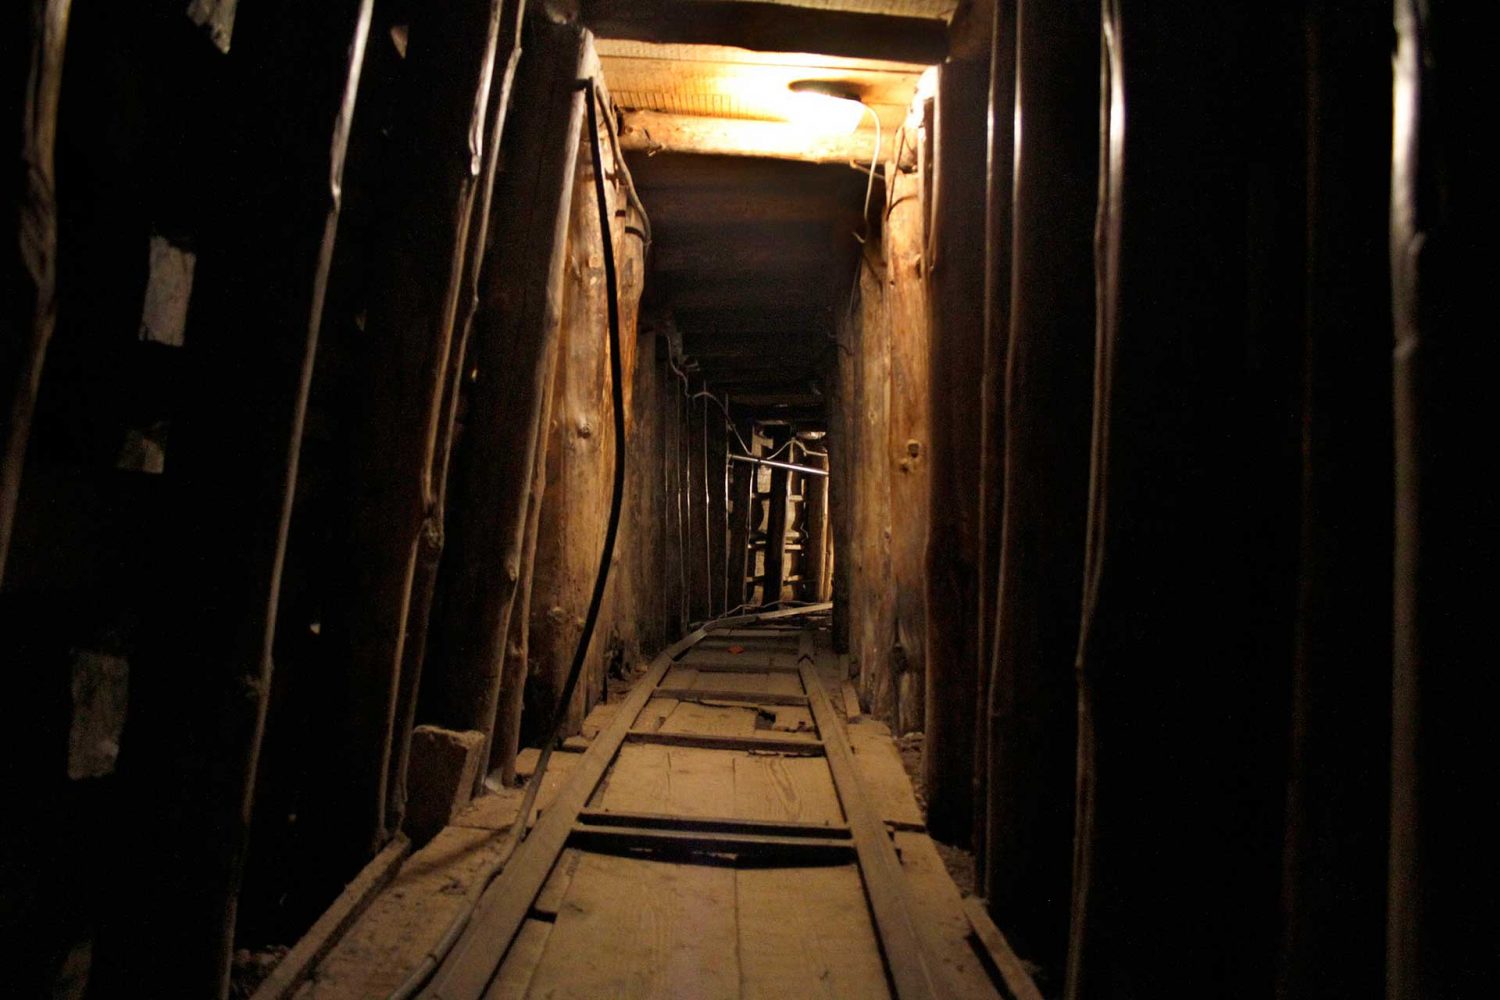 Sarajevo - War Museum Tunnel